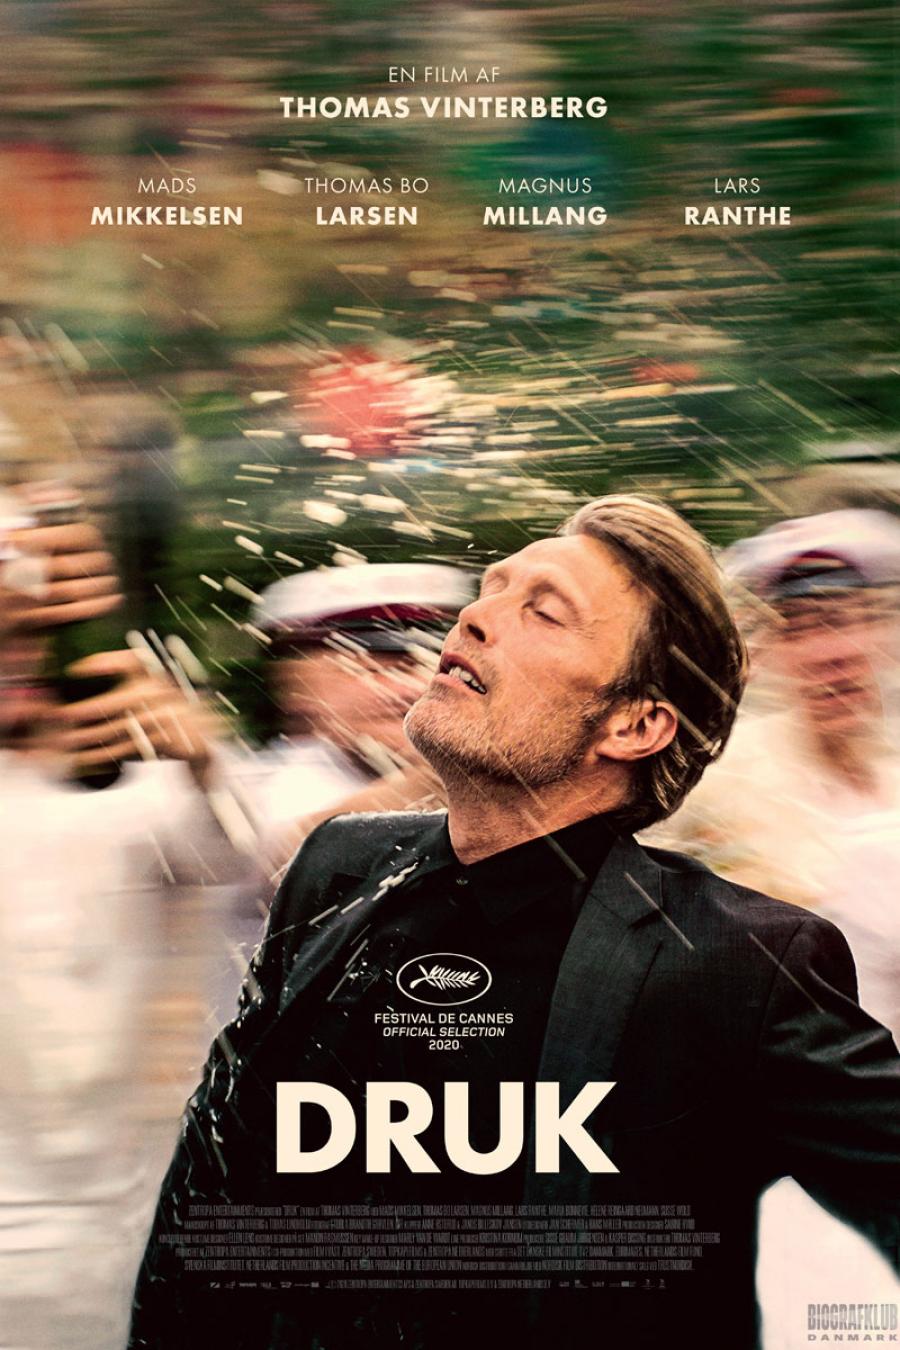 plakat fra filmen Druk